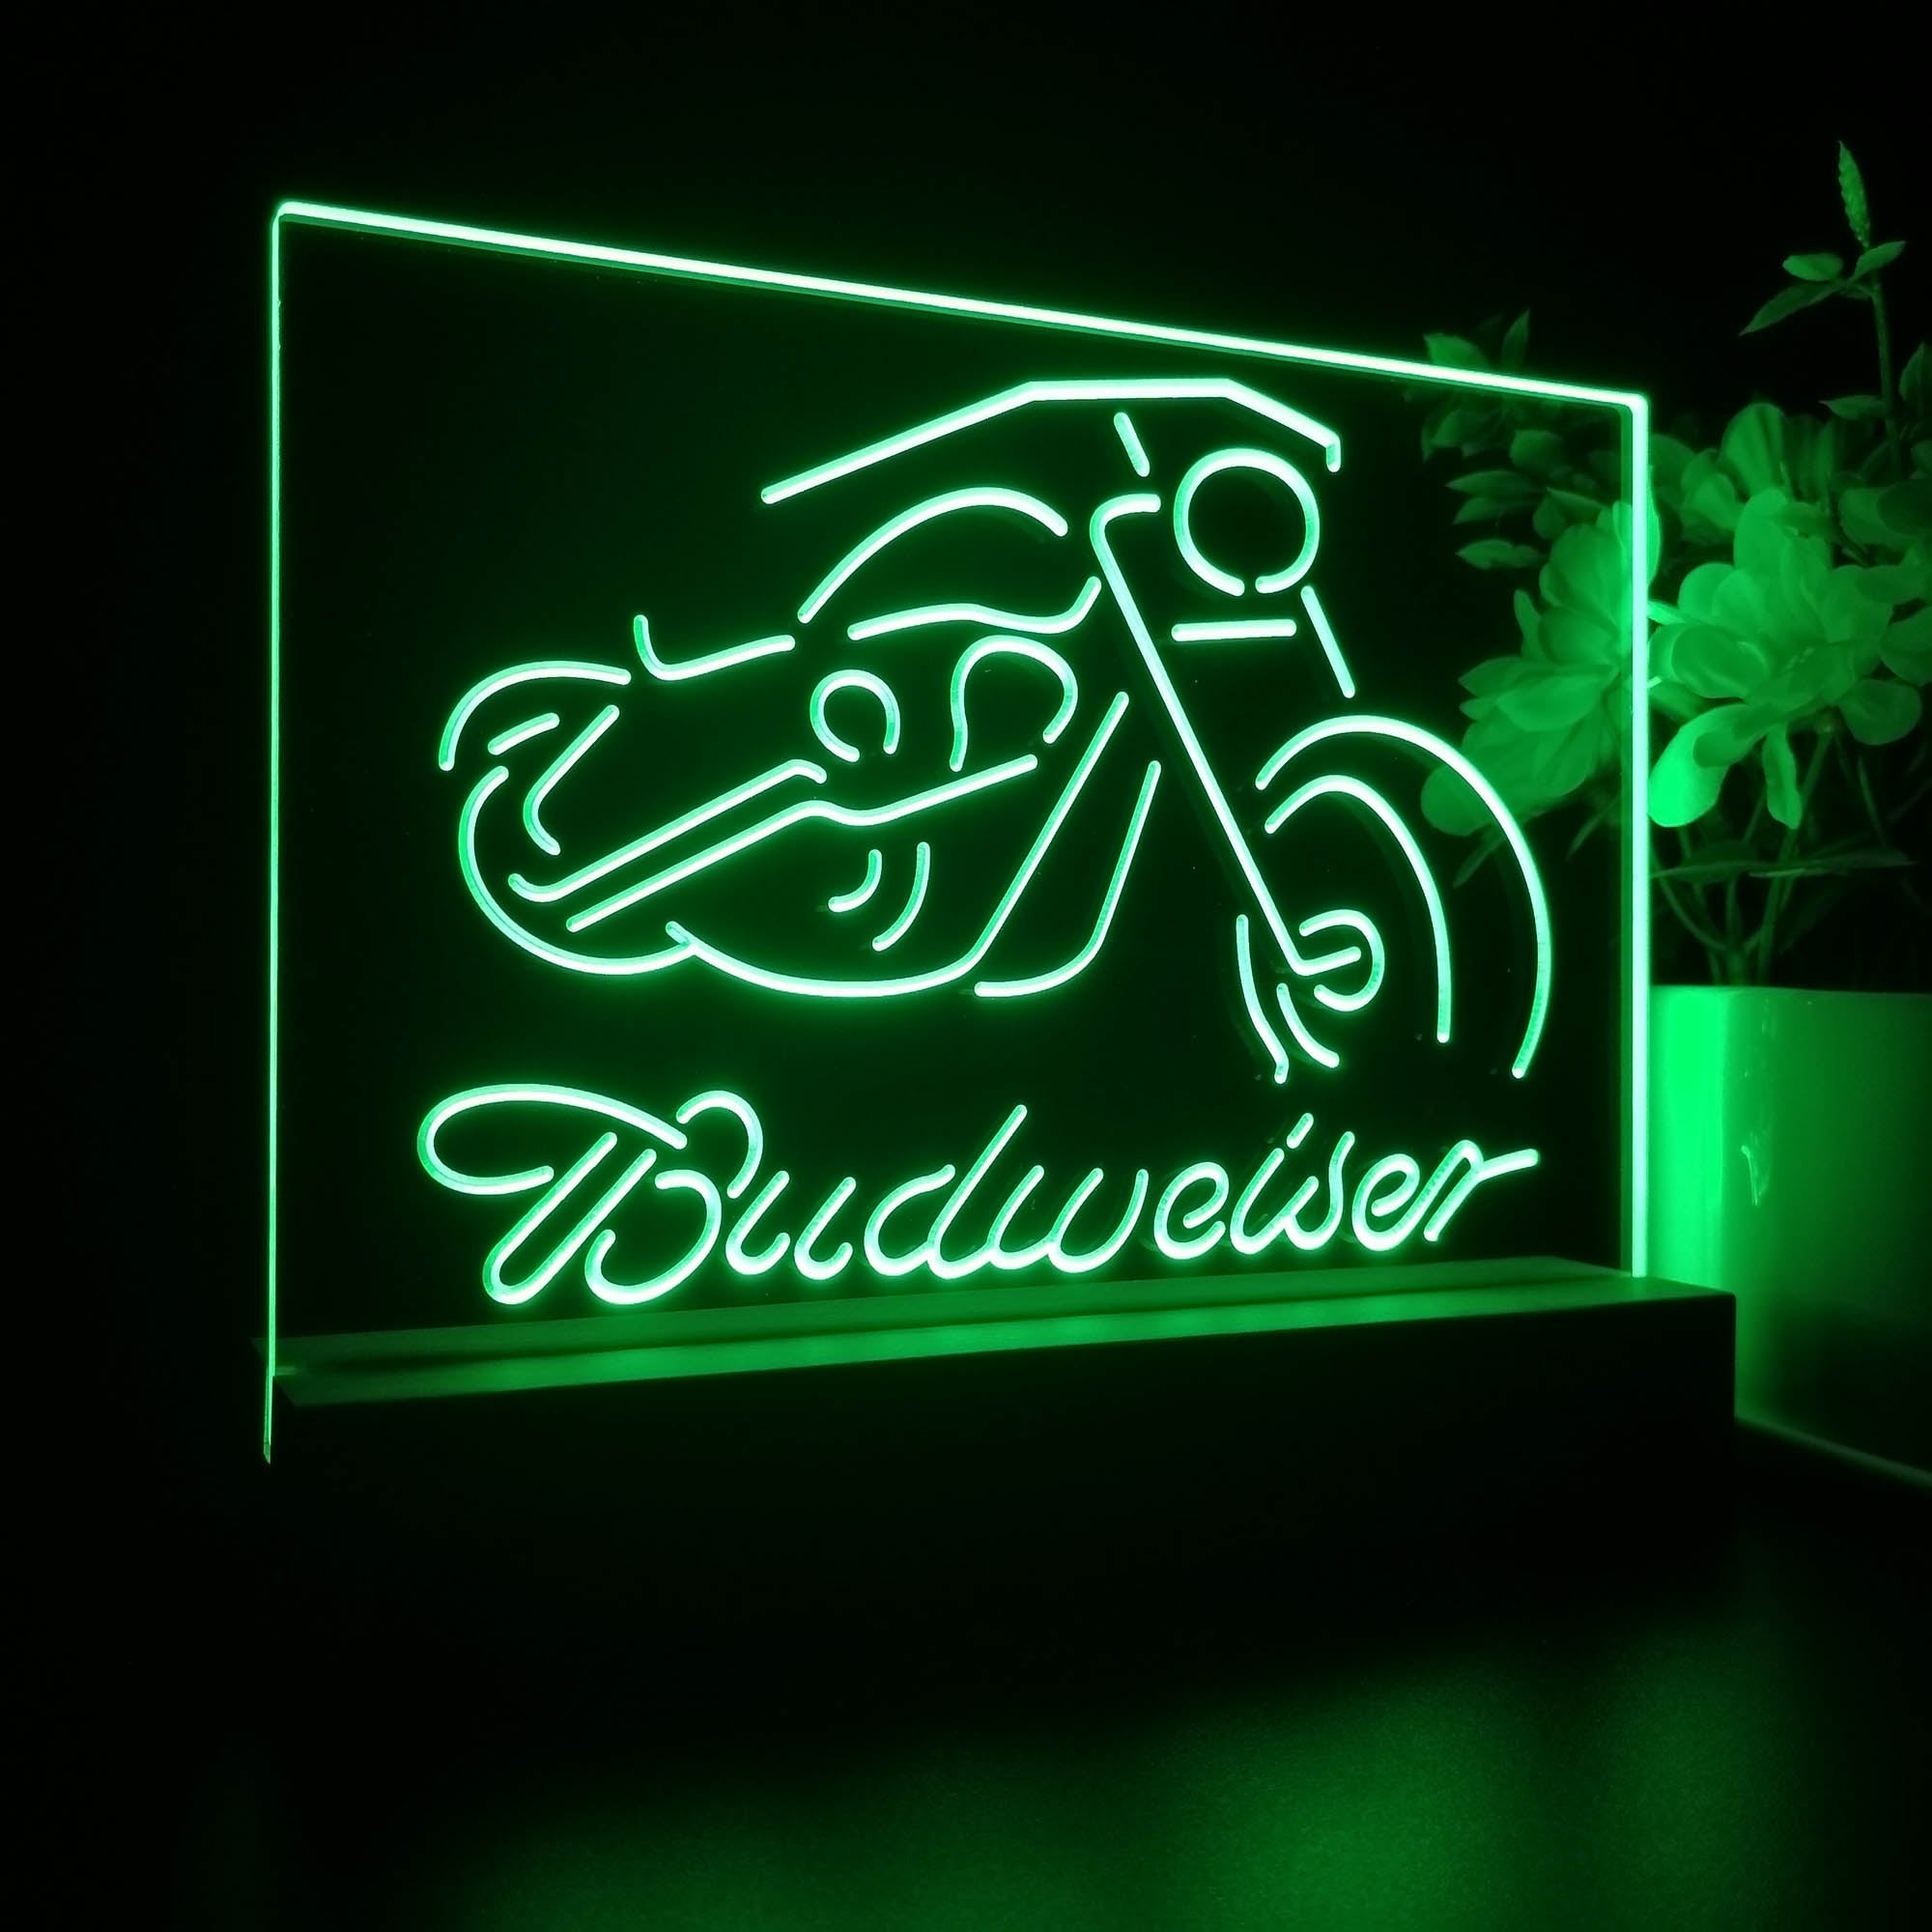 Budweiser Motorcycle Garage Neon Sign Pub Bar Lamp